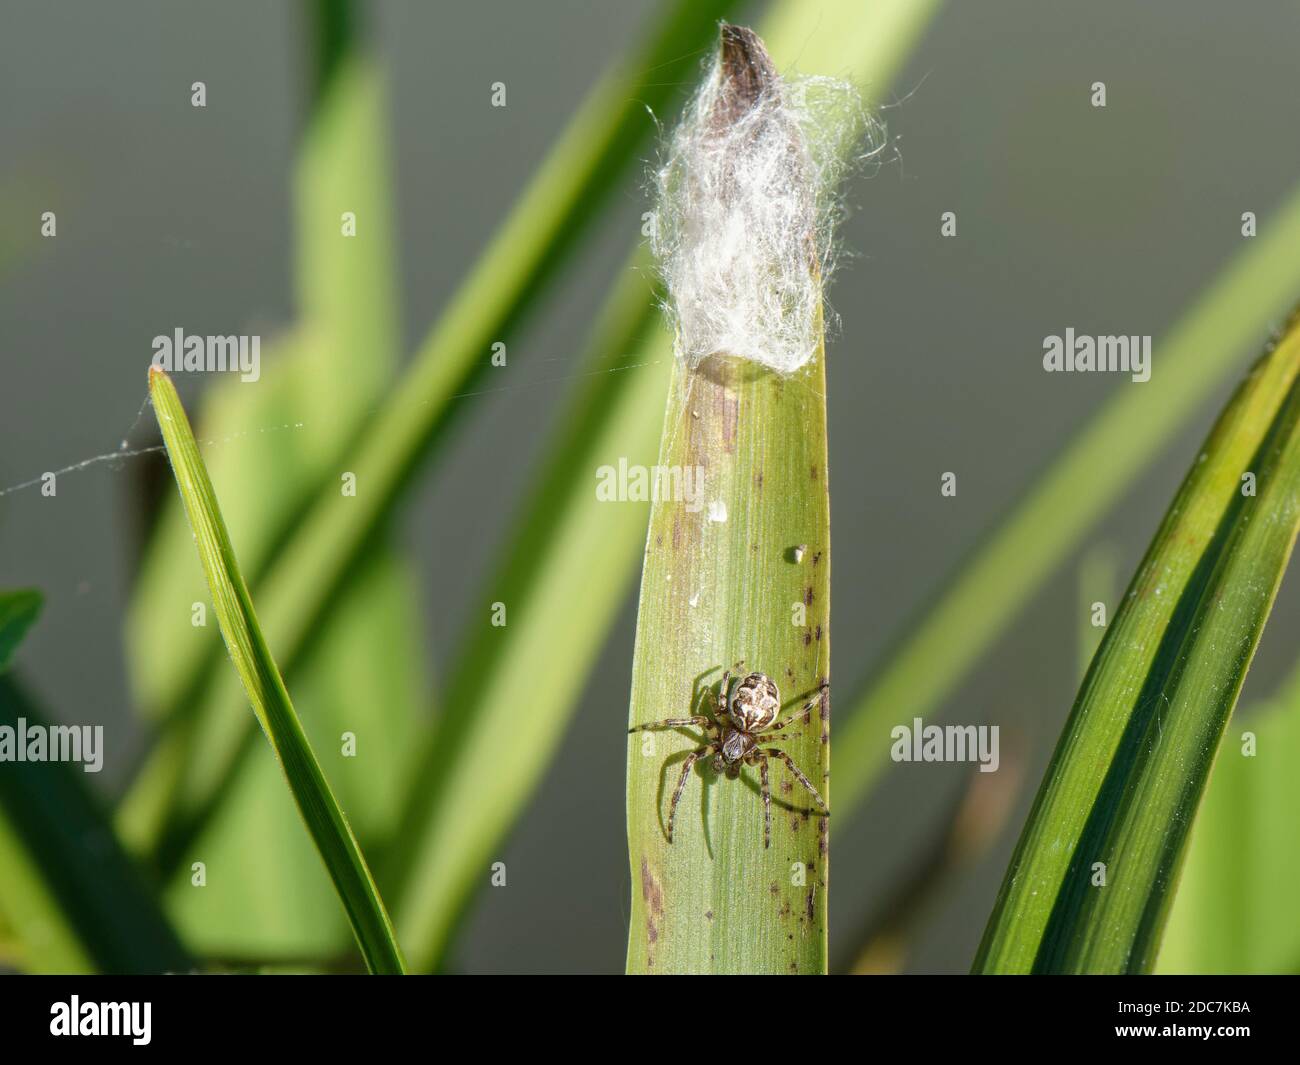 La femelle de l'araignée de sillon / araignée foliaire (Larinioides cornutus) est sortie de sa retraite silken sur une feuille de roseau sur une bordure de rivière, Wiltshire, Royaume-Uni, juillet Banque D'Images